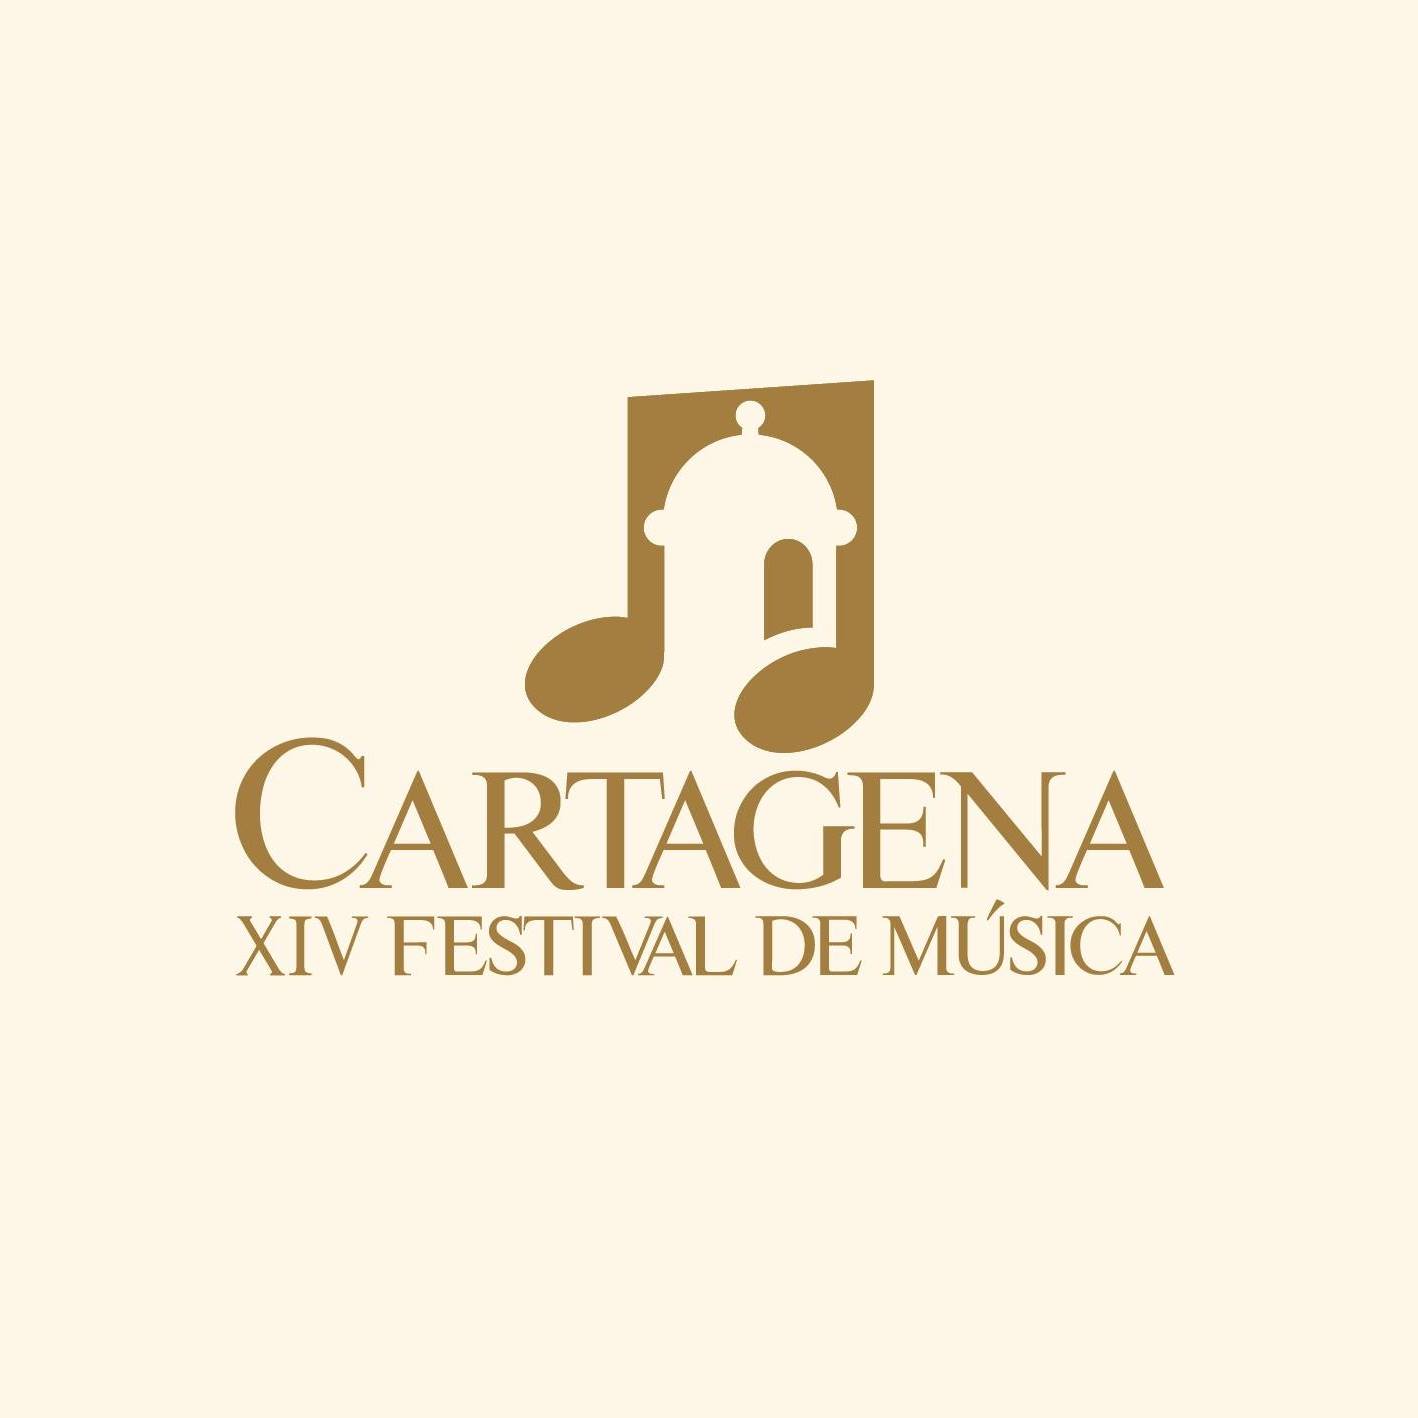 Año a año, el Cartagena Festival Internacional de Música invita a su público a recorrer algunos de los principales hitos en la historia de la música.